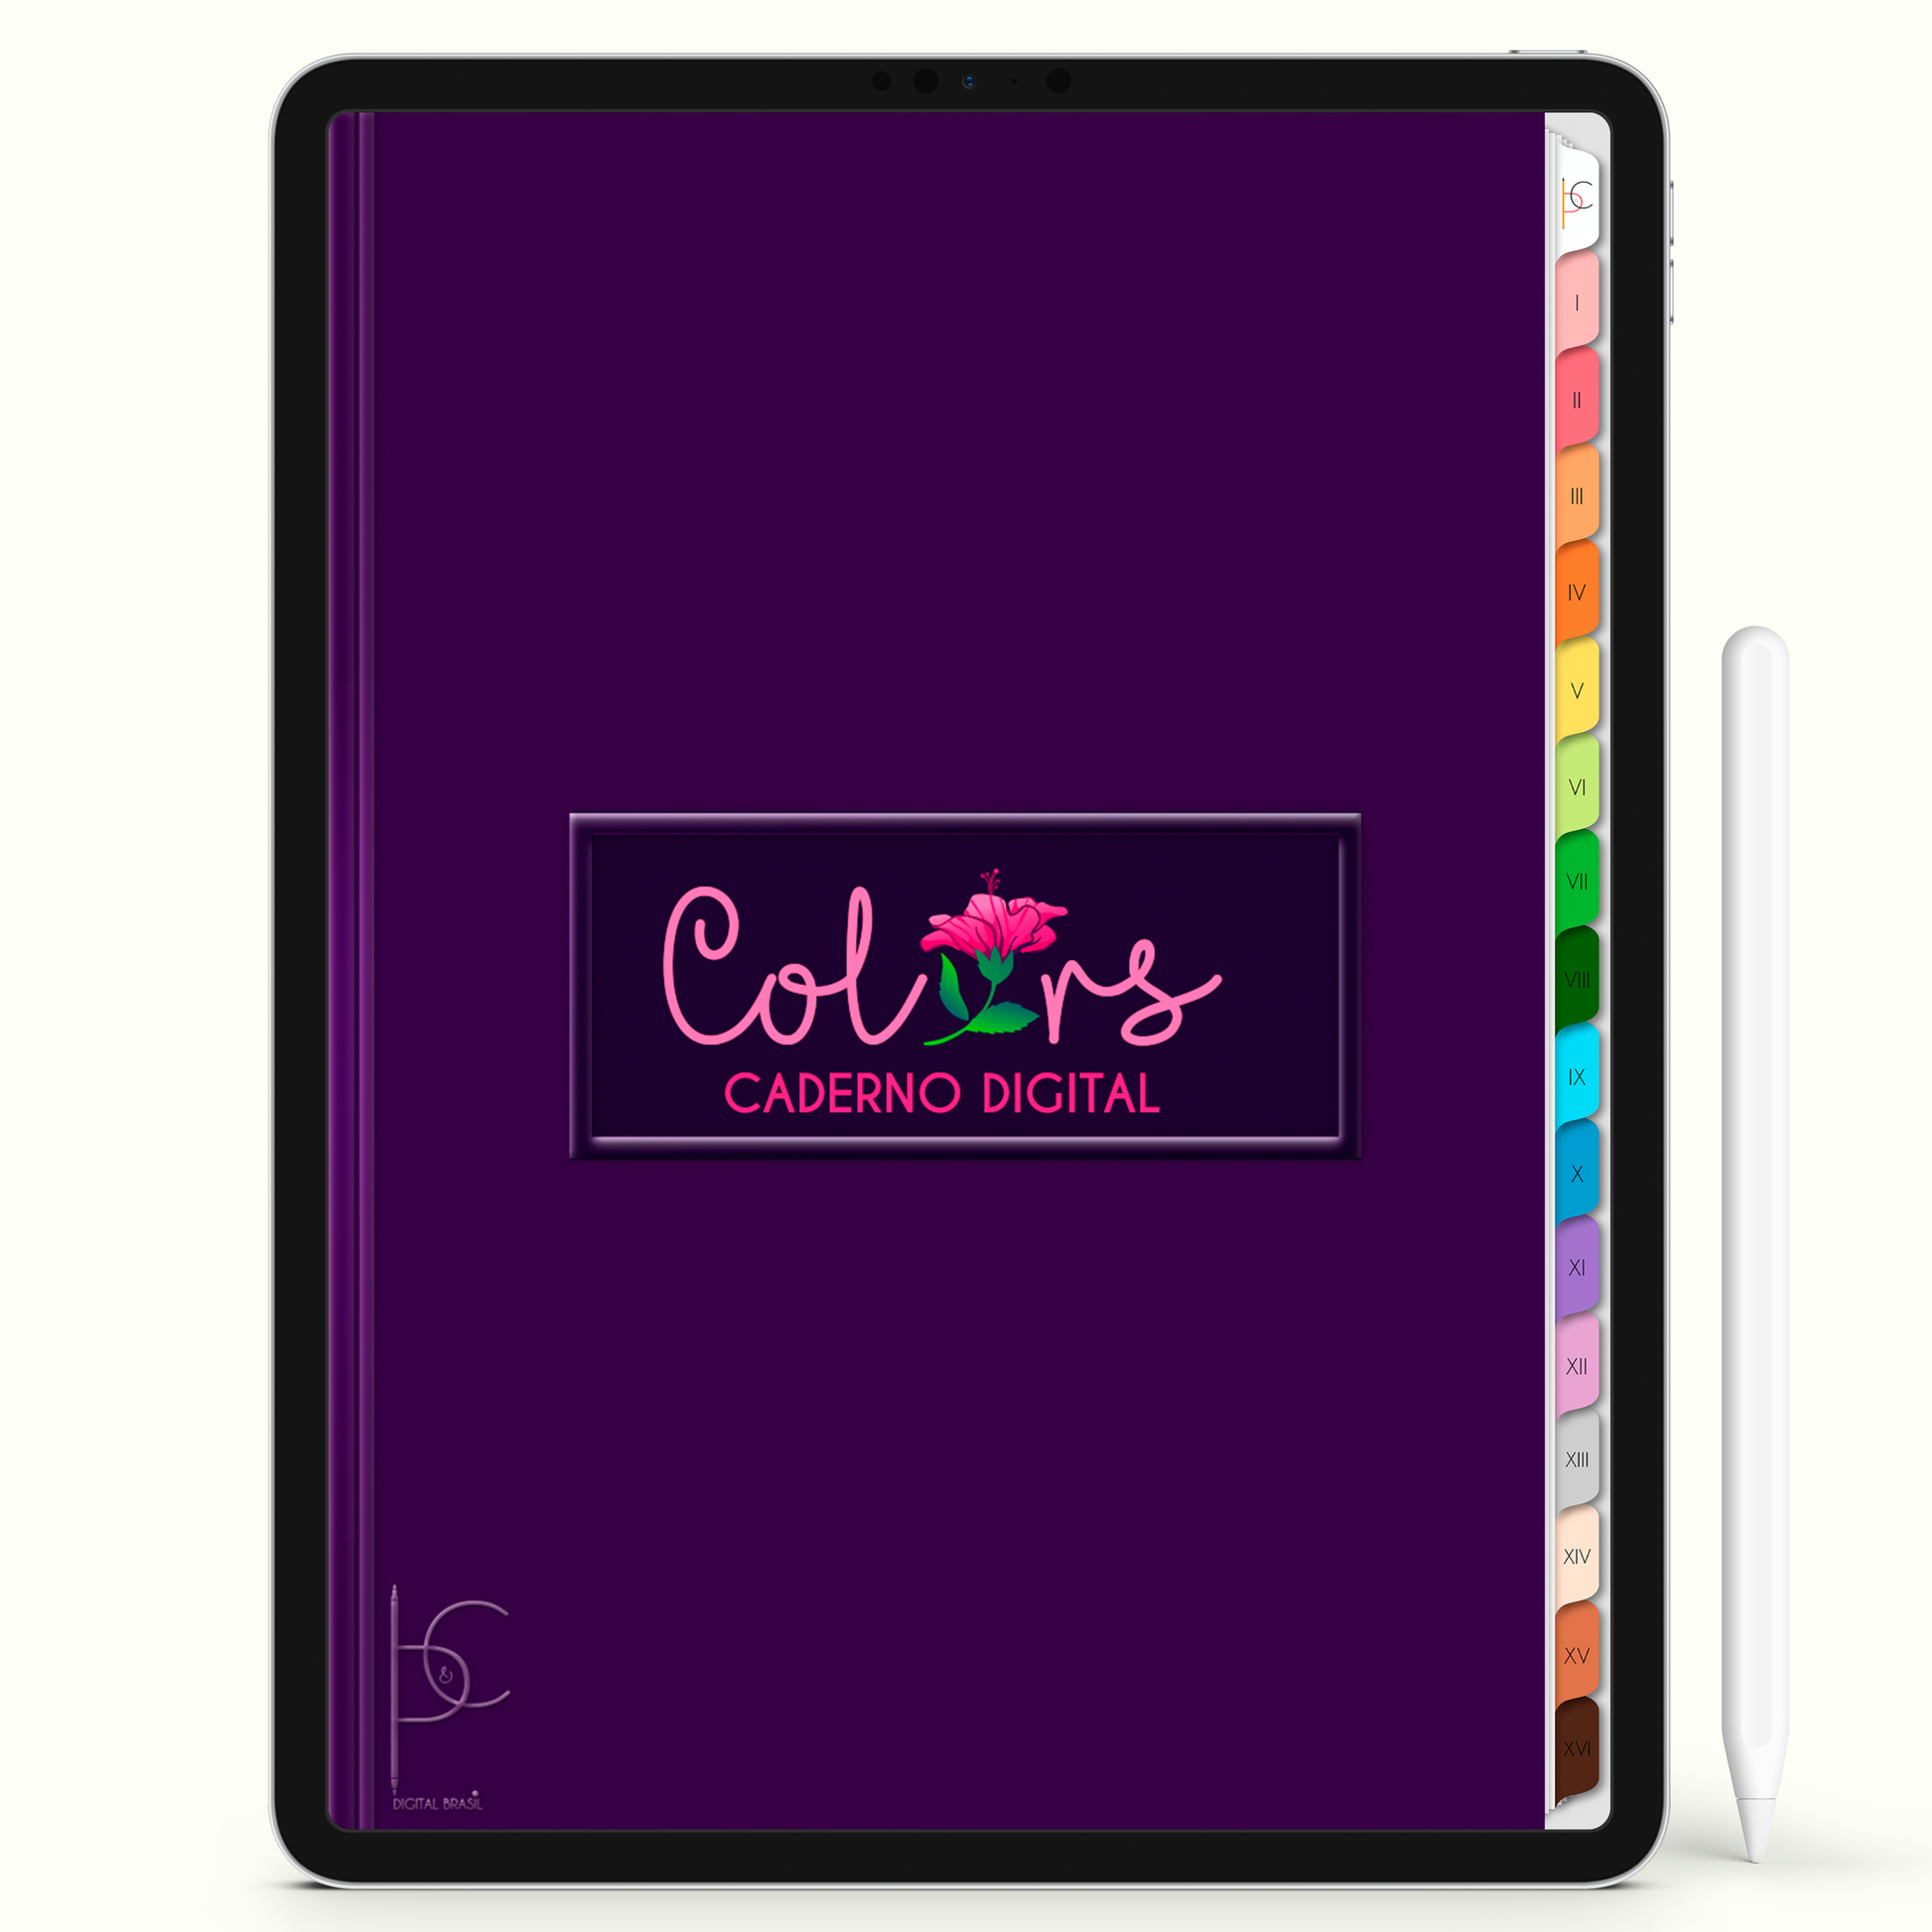 Caderno Digital Colors Melhores Resumos 16 Matérias • Para iPad e Tablet Android • Download instantâneo • Sustentável